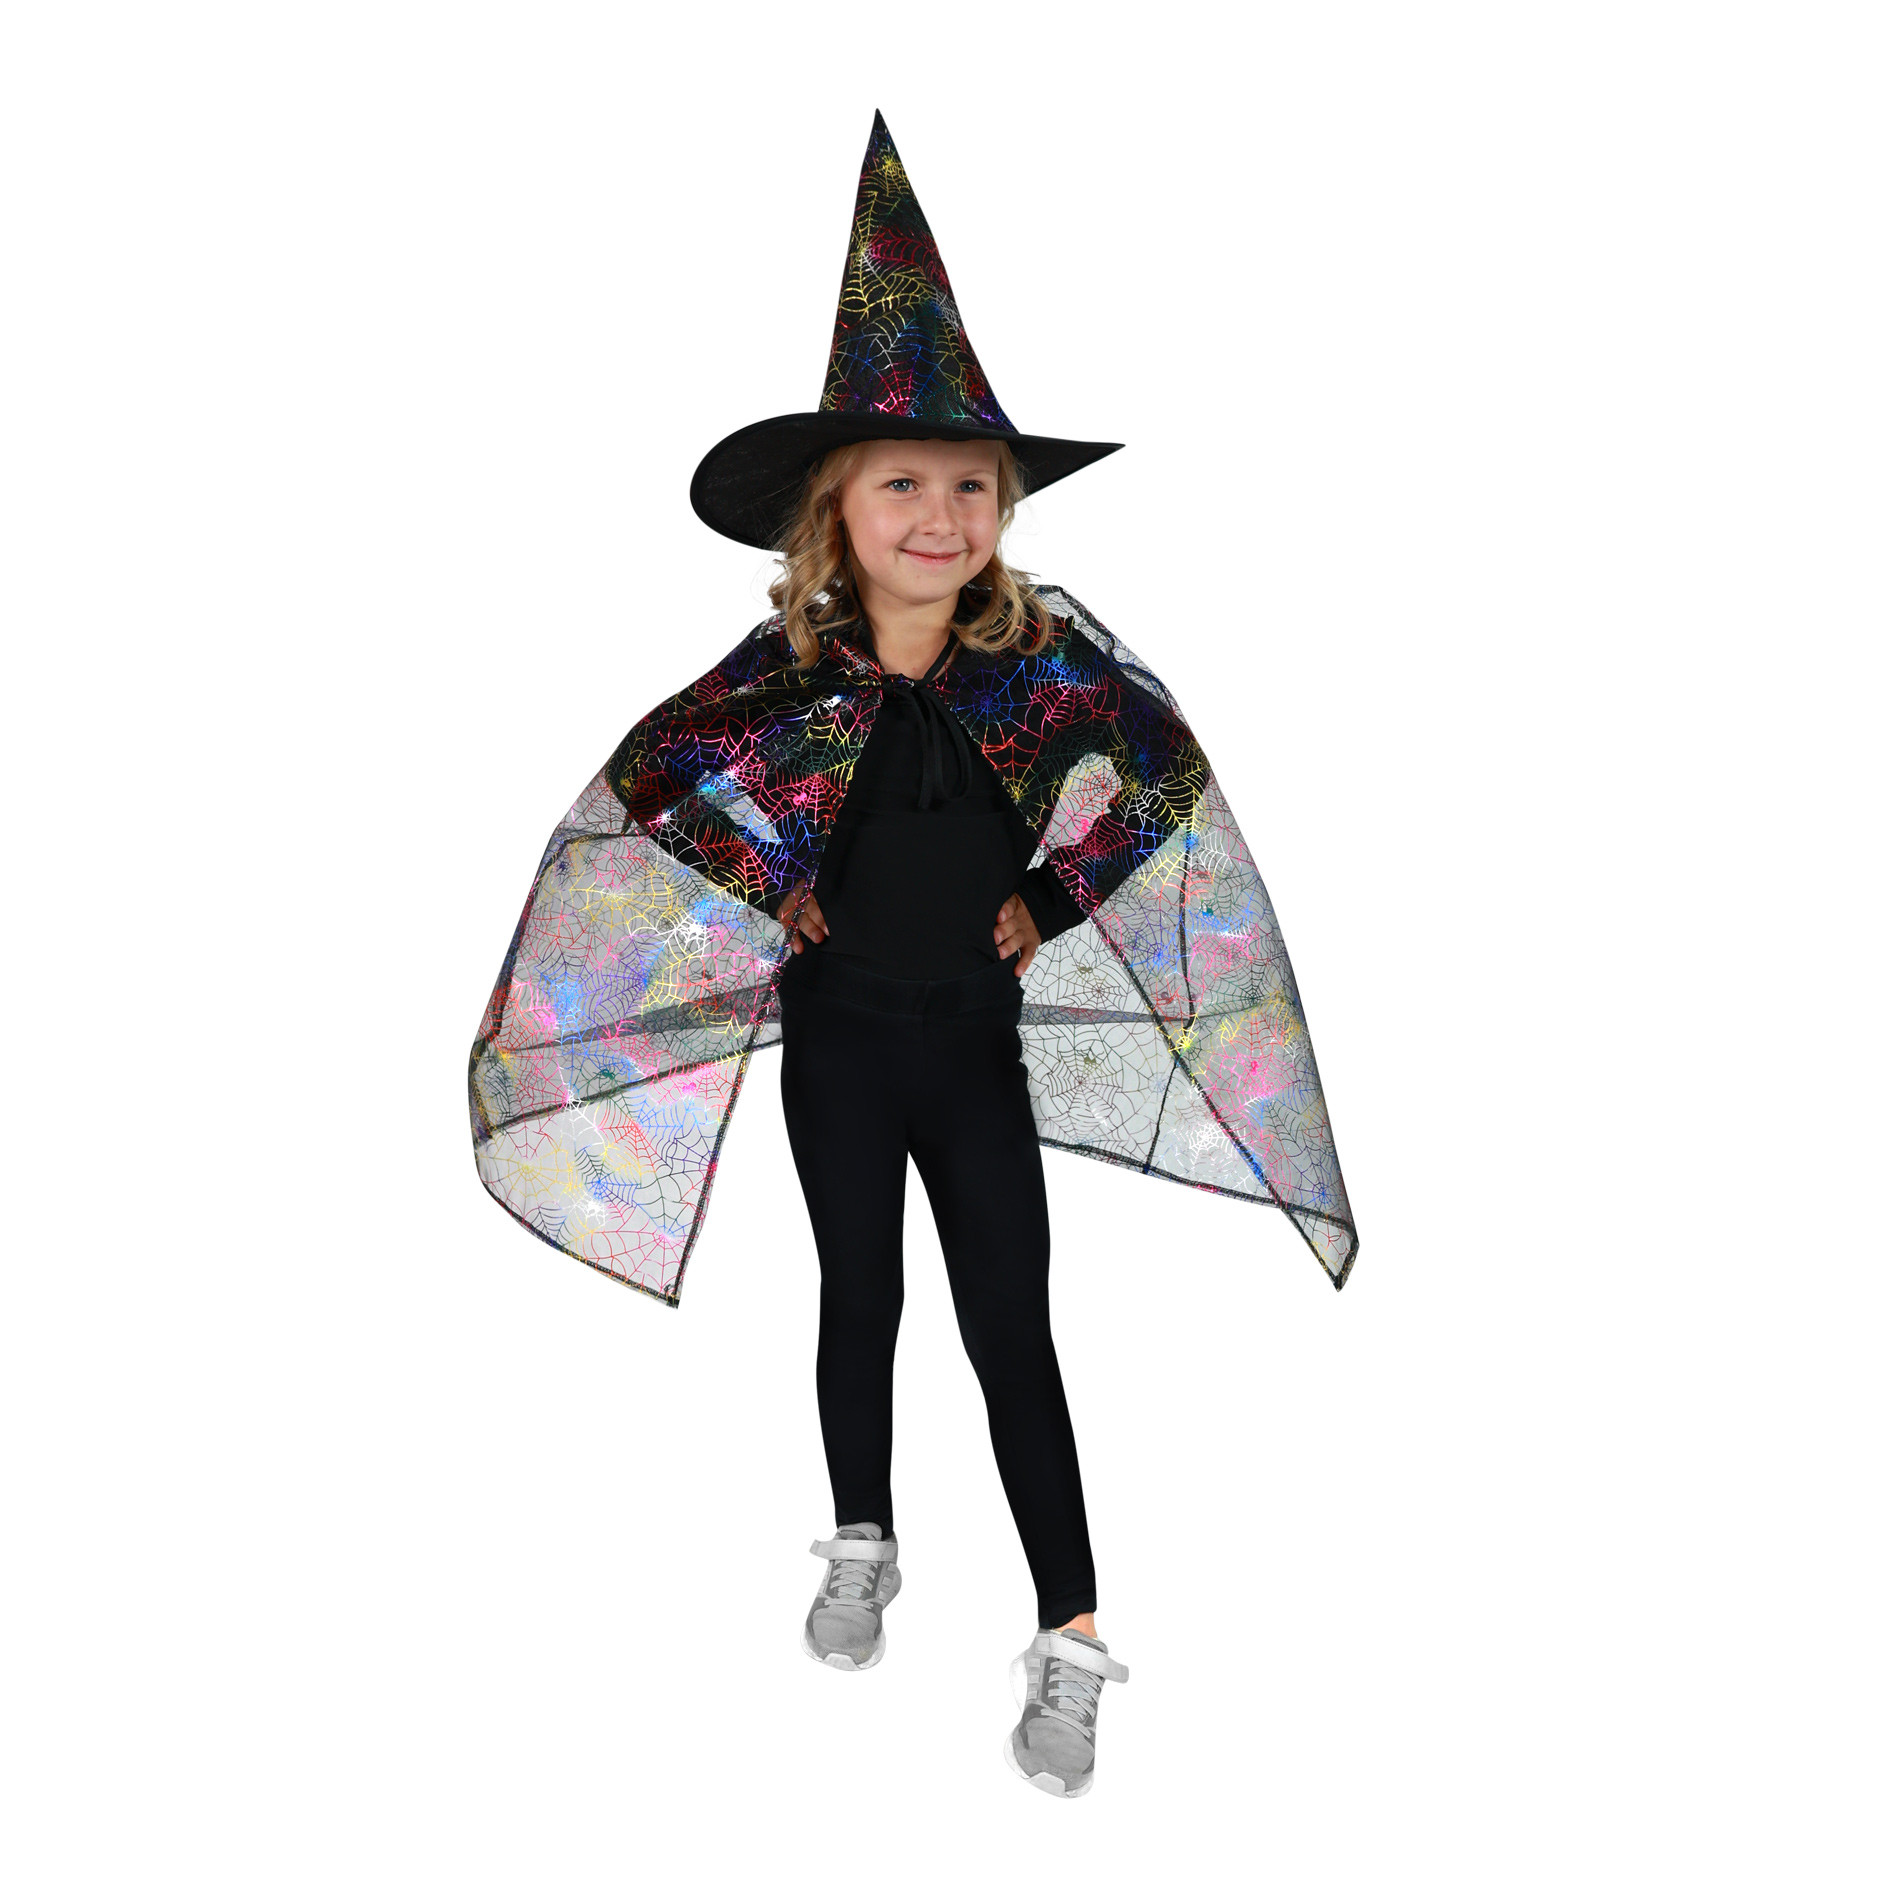 Dětský plášť s pavučinou čarodějnice s kloboukem